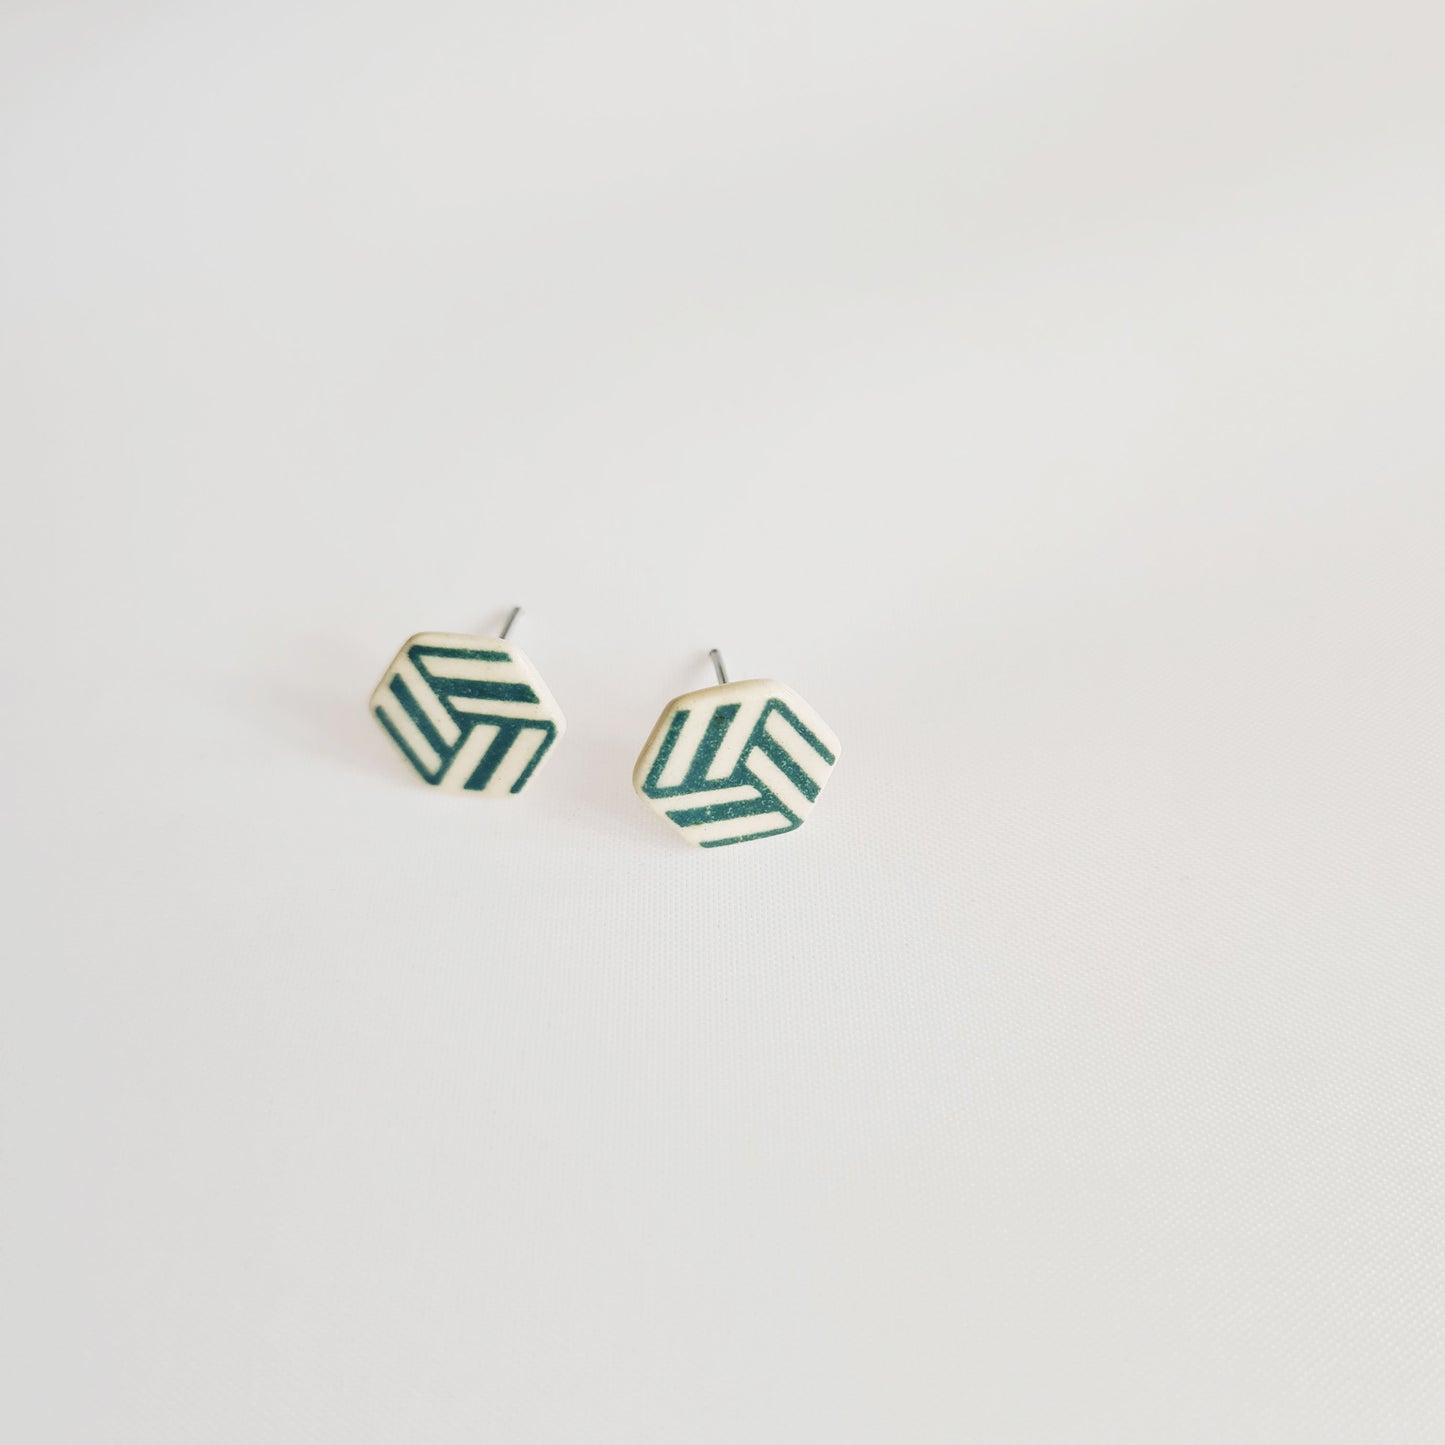 Hexagon shape ceramic stud earrings( Pattern type)